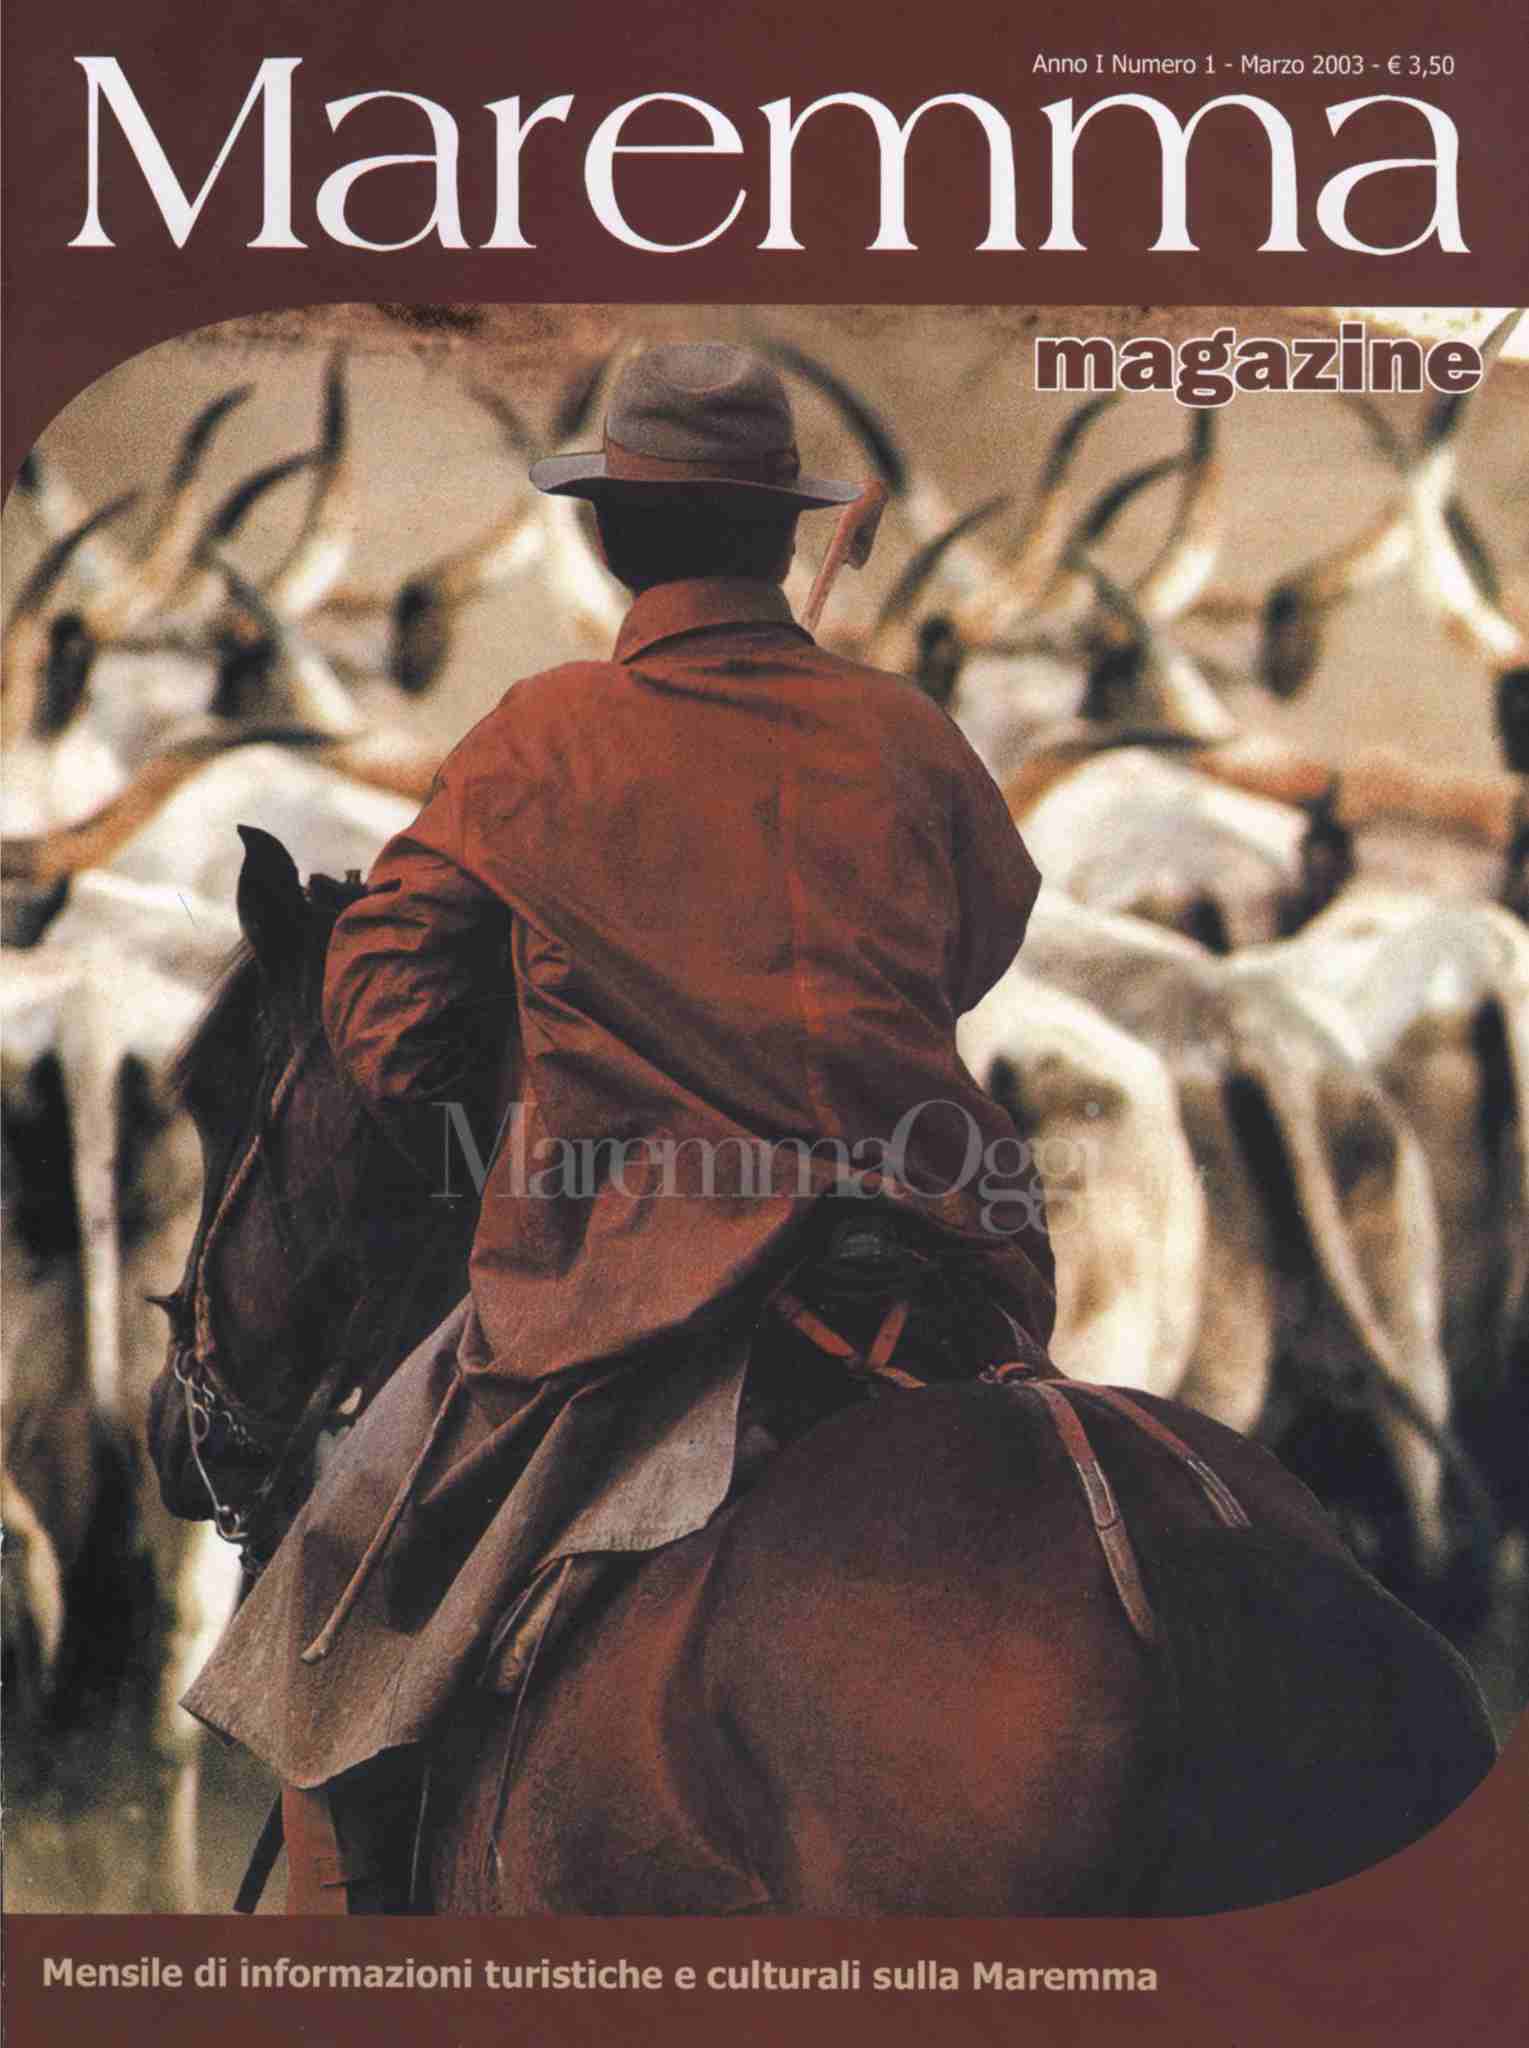 La copertina del numero 1, marzo 2003